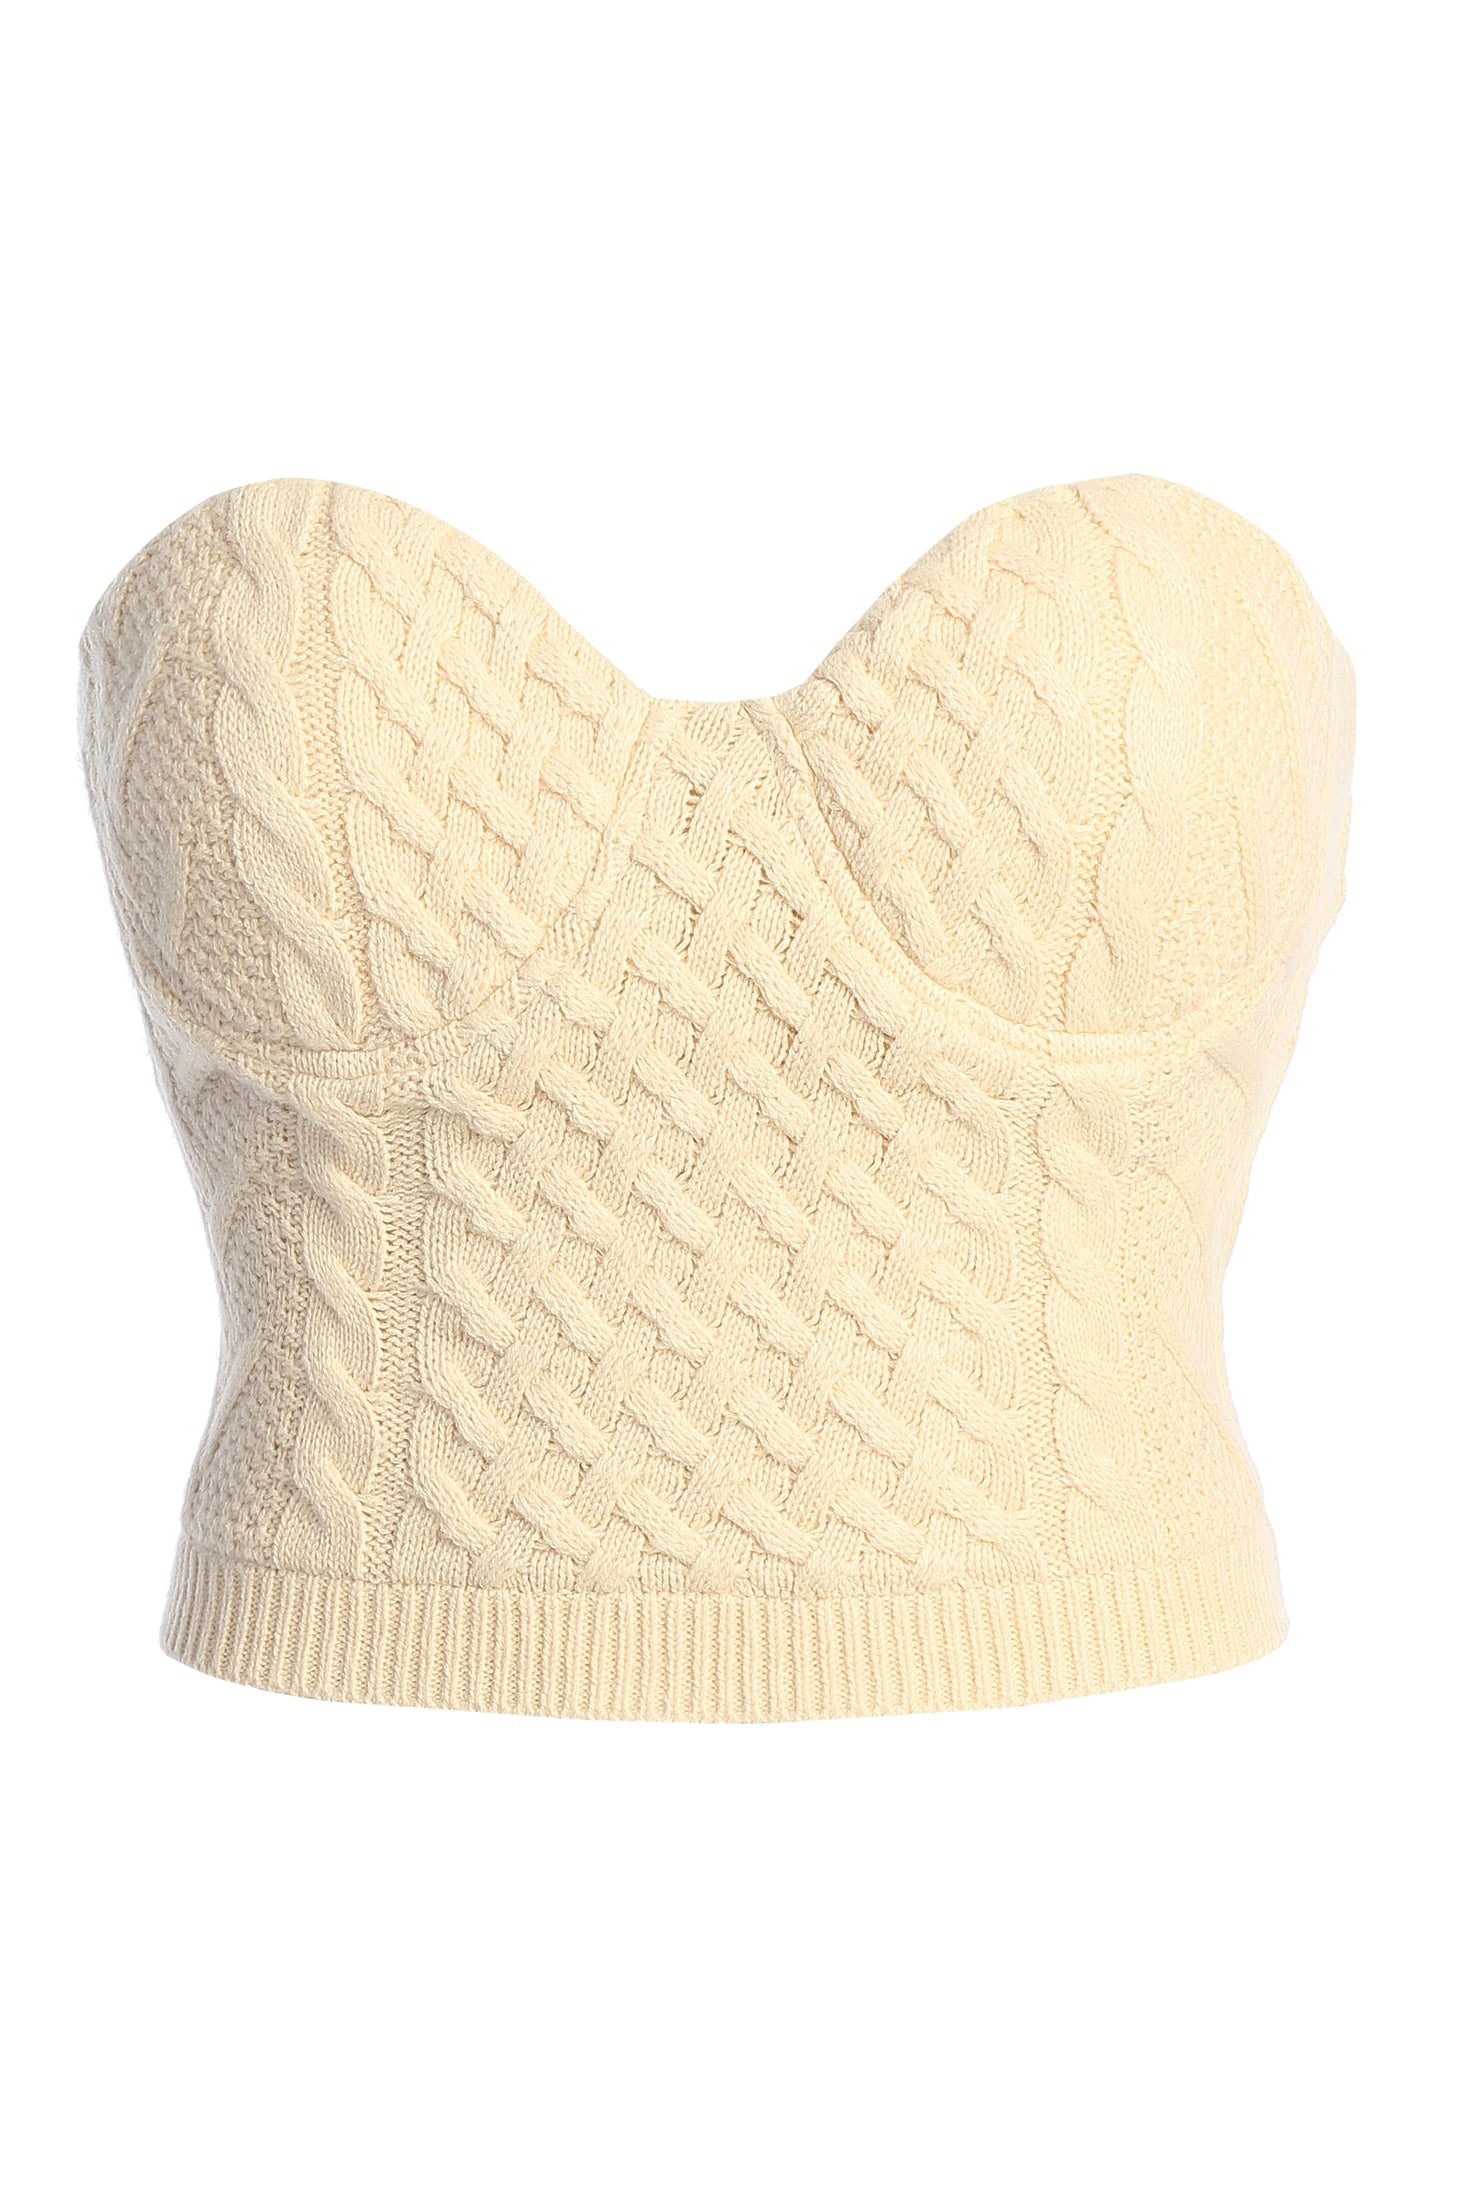 Buttercream Davina Sweater Knit Bustier Top